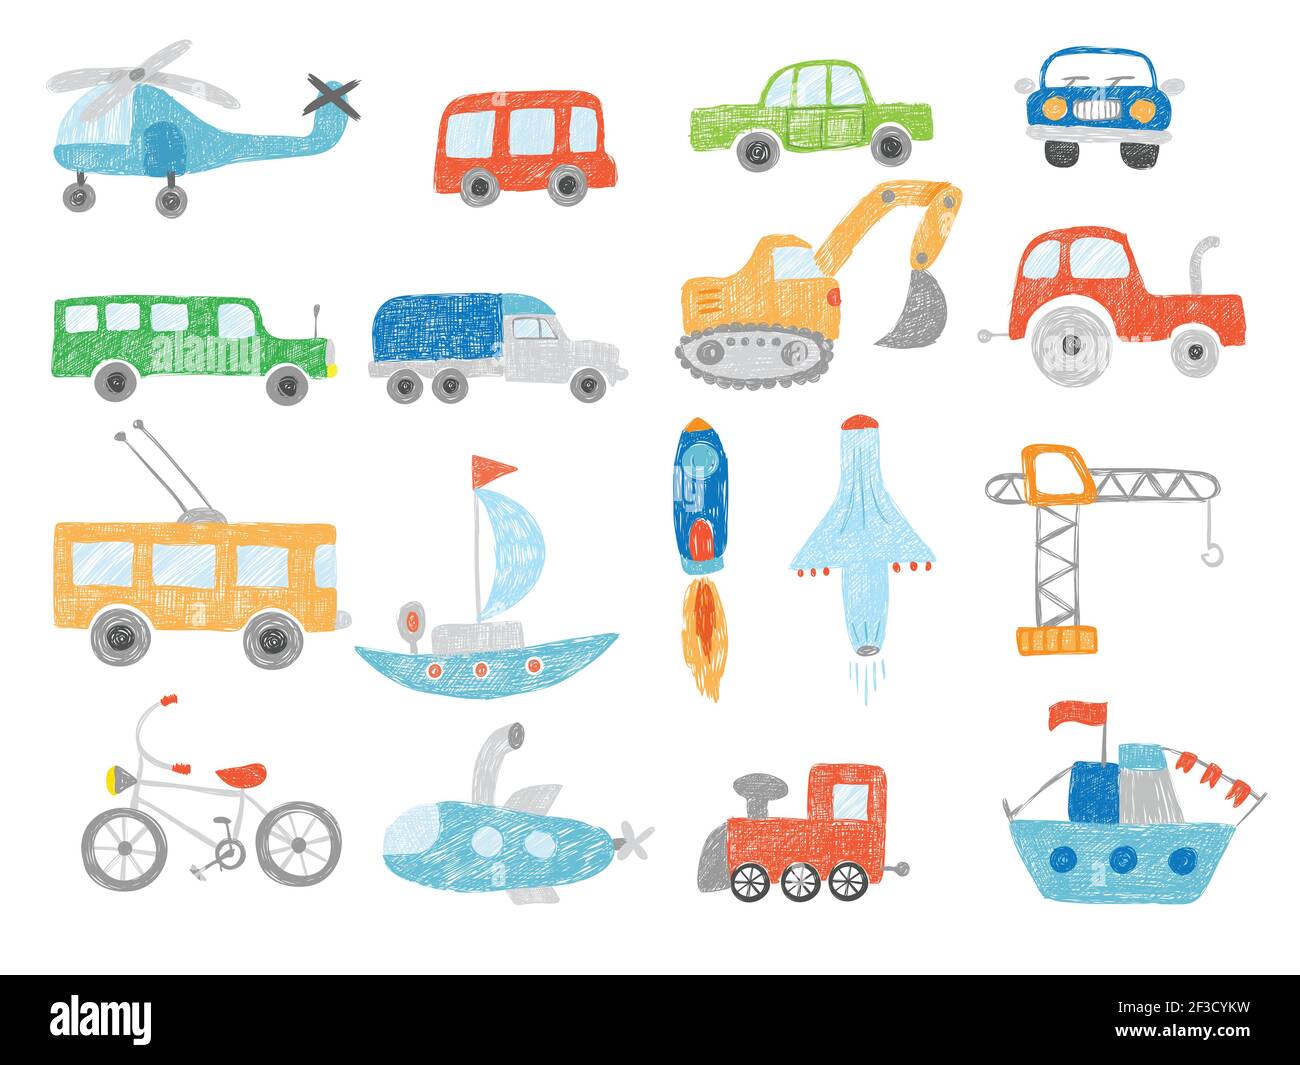 Transportkritzel. Kinder Zeichnung Technik Traktor Autos Flugzeug und Schiff Vektor Bilder isoliert Stock Vektor